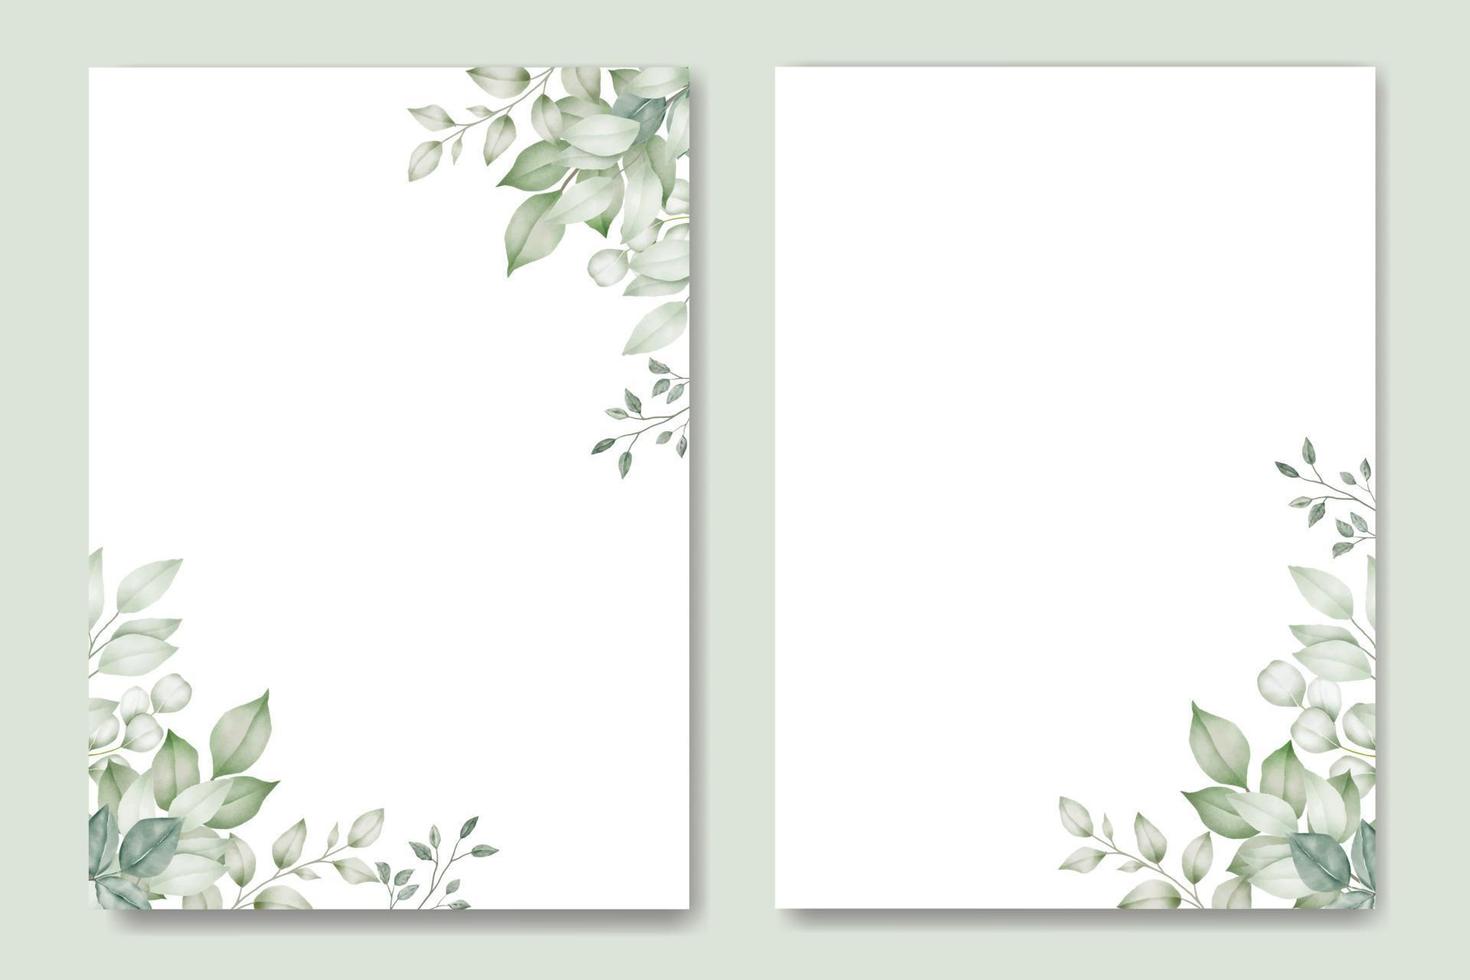 modèle de carte d'invitation de mariage avec aquarelle de feuilles vertes vecteur